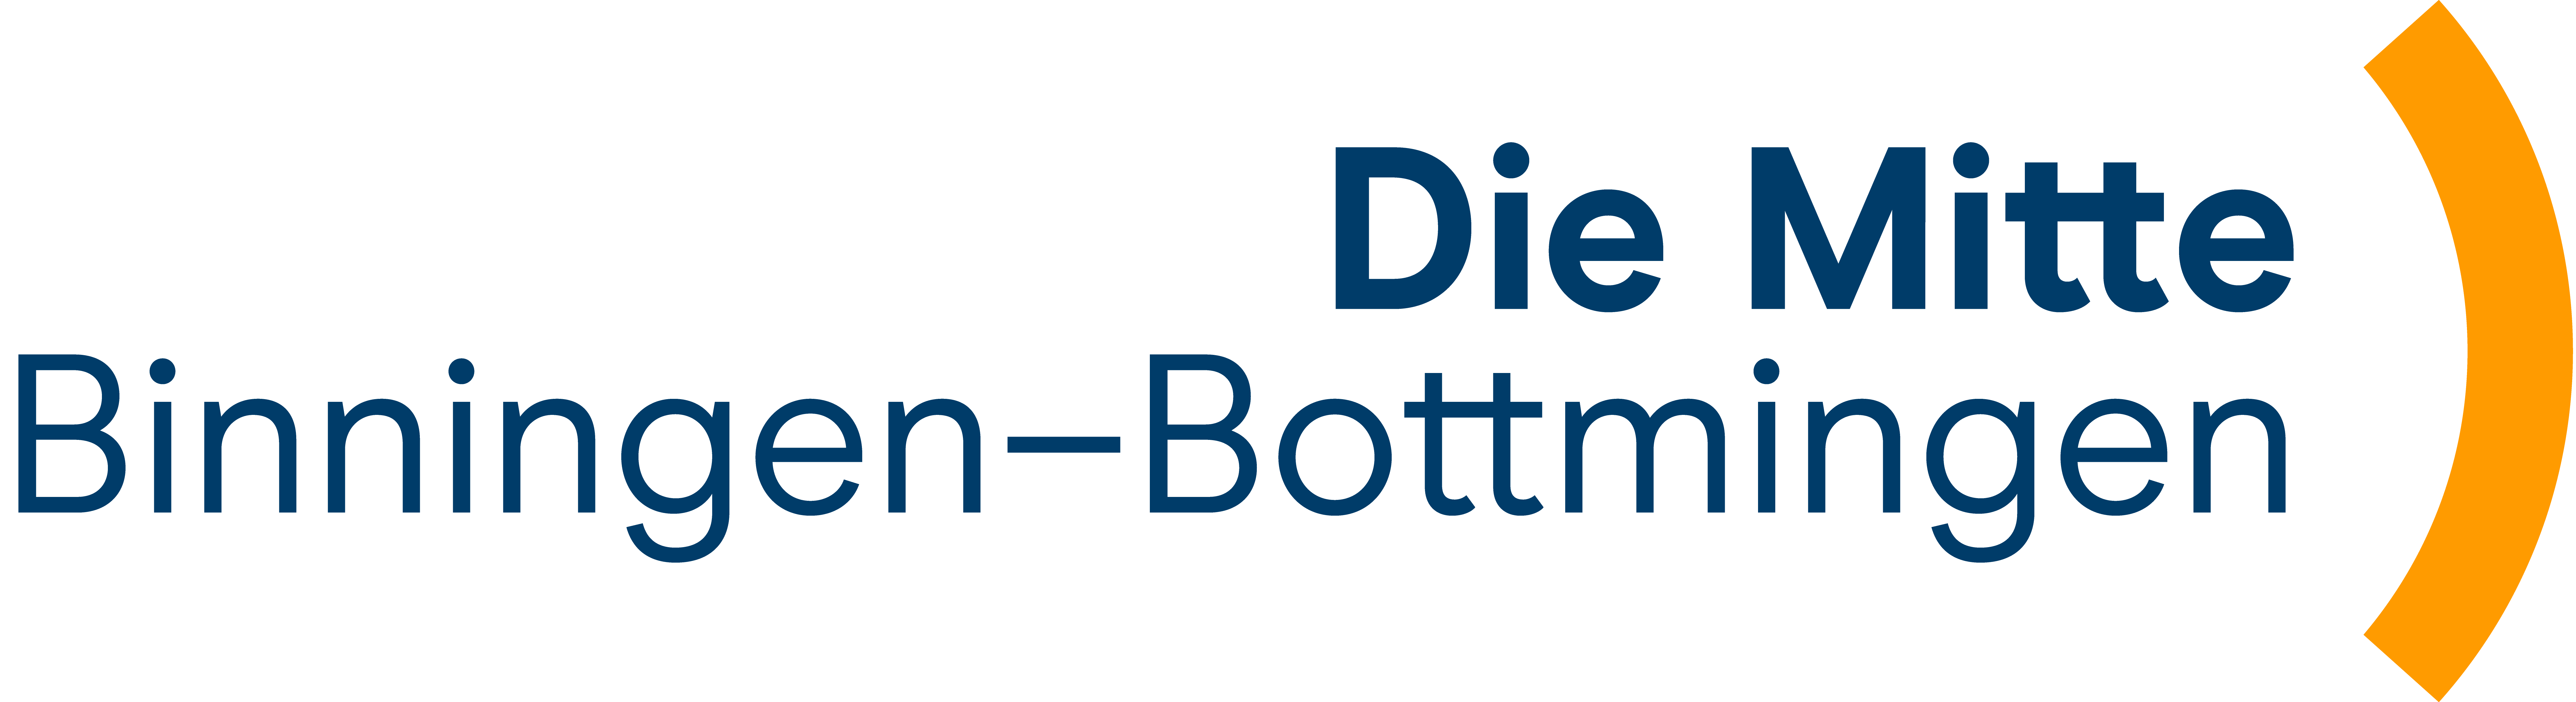 Logo - Die Mitte Binningen - Bottmingen